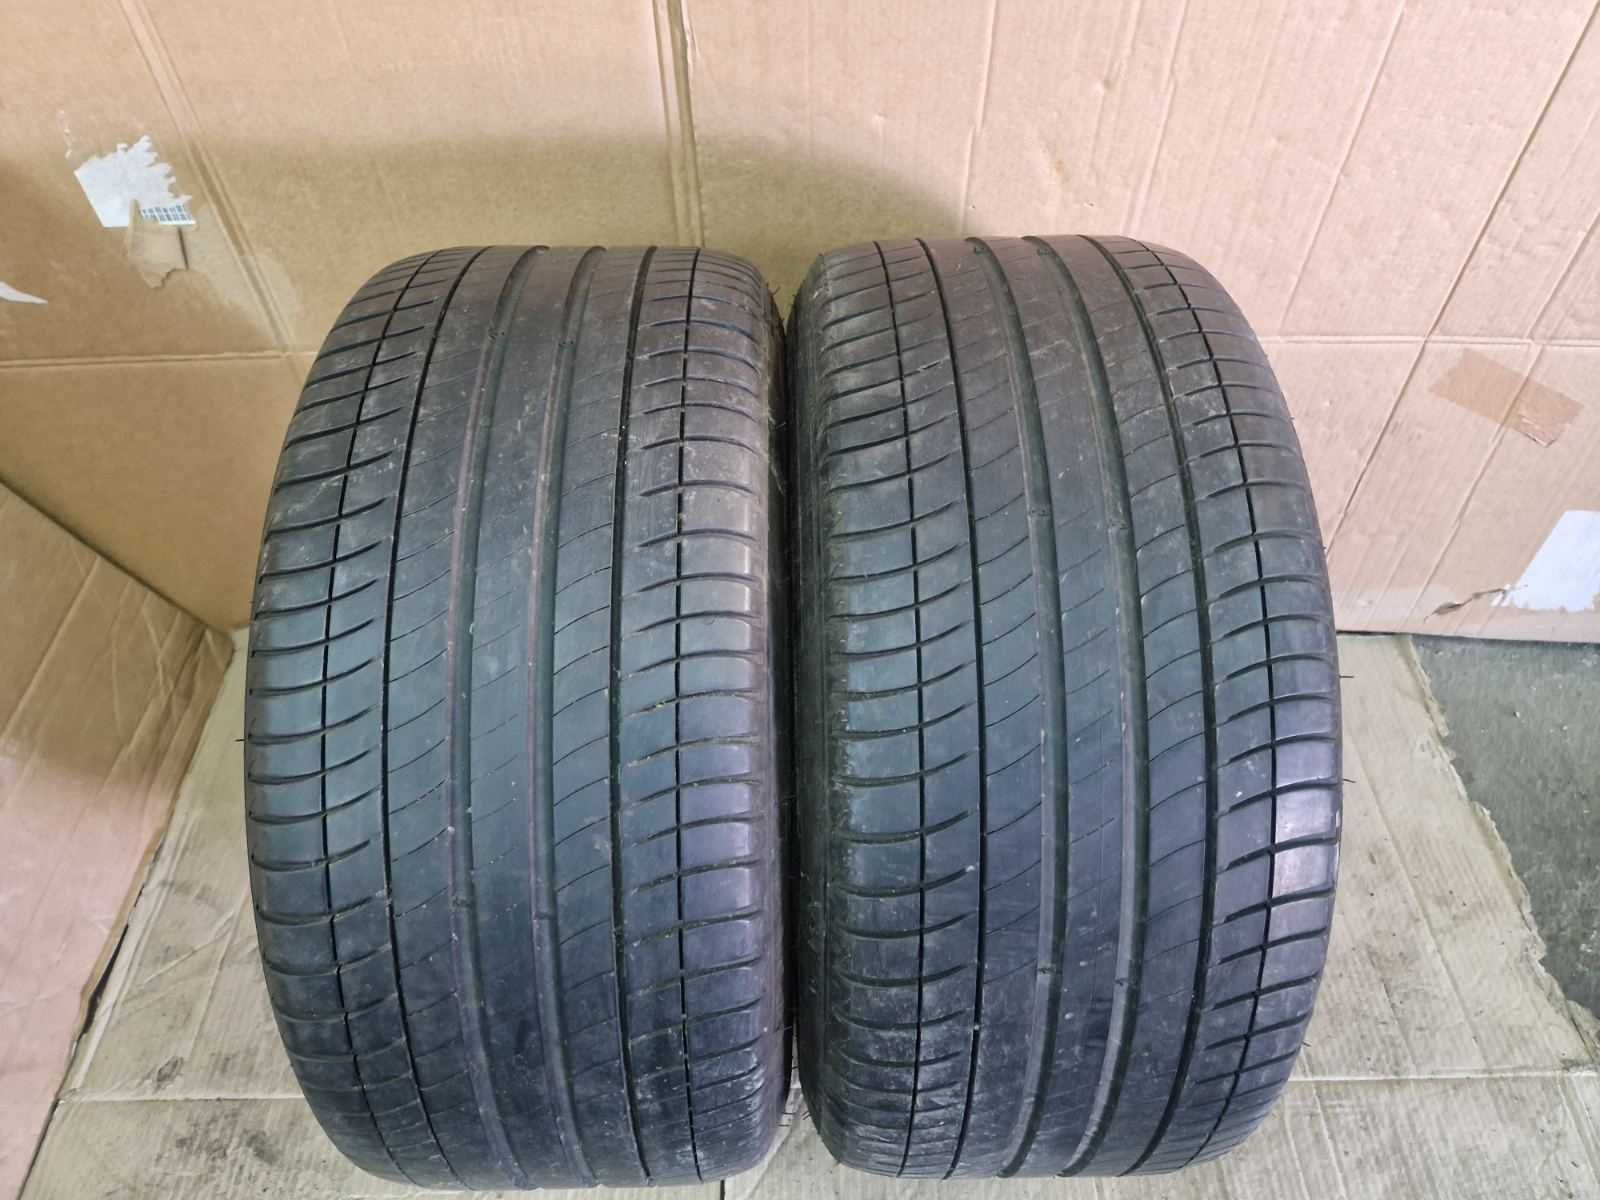 2 Michelin R19 275/35/ 
летни гуми  DOT01217